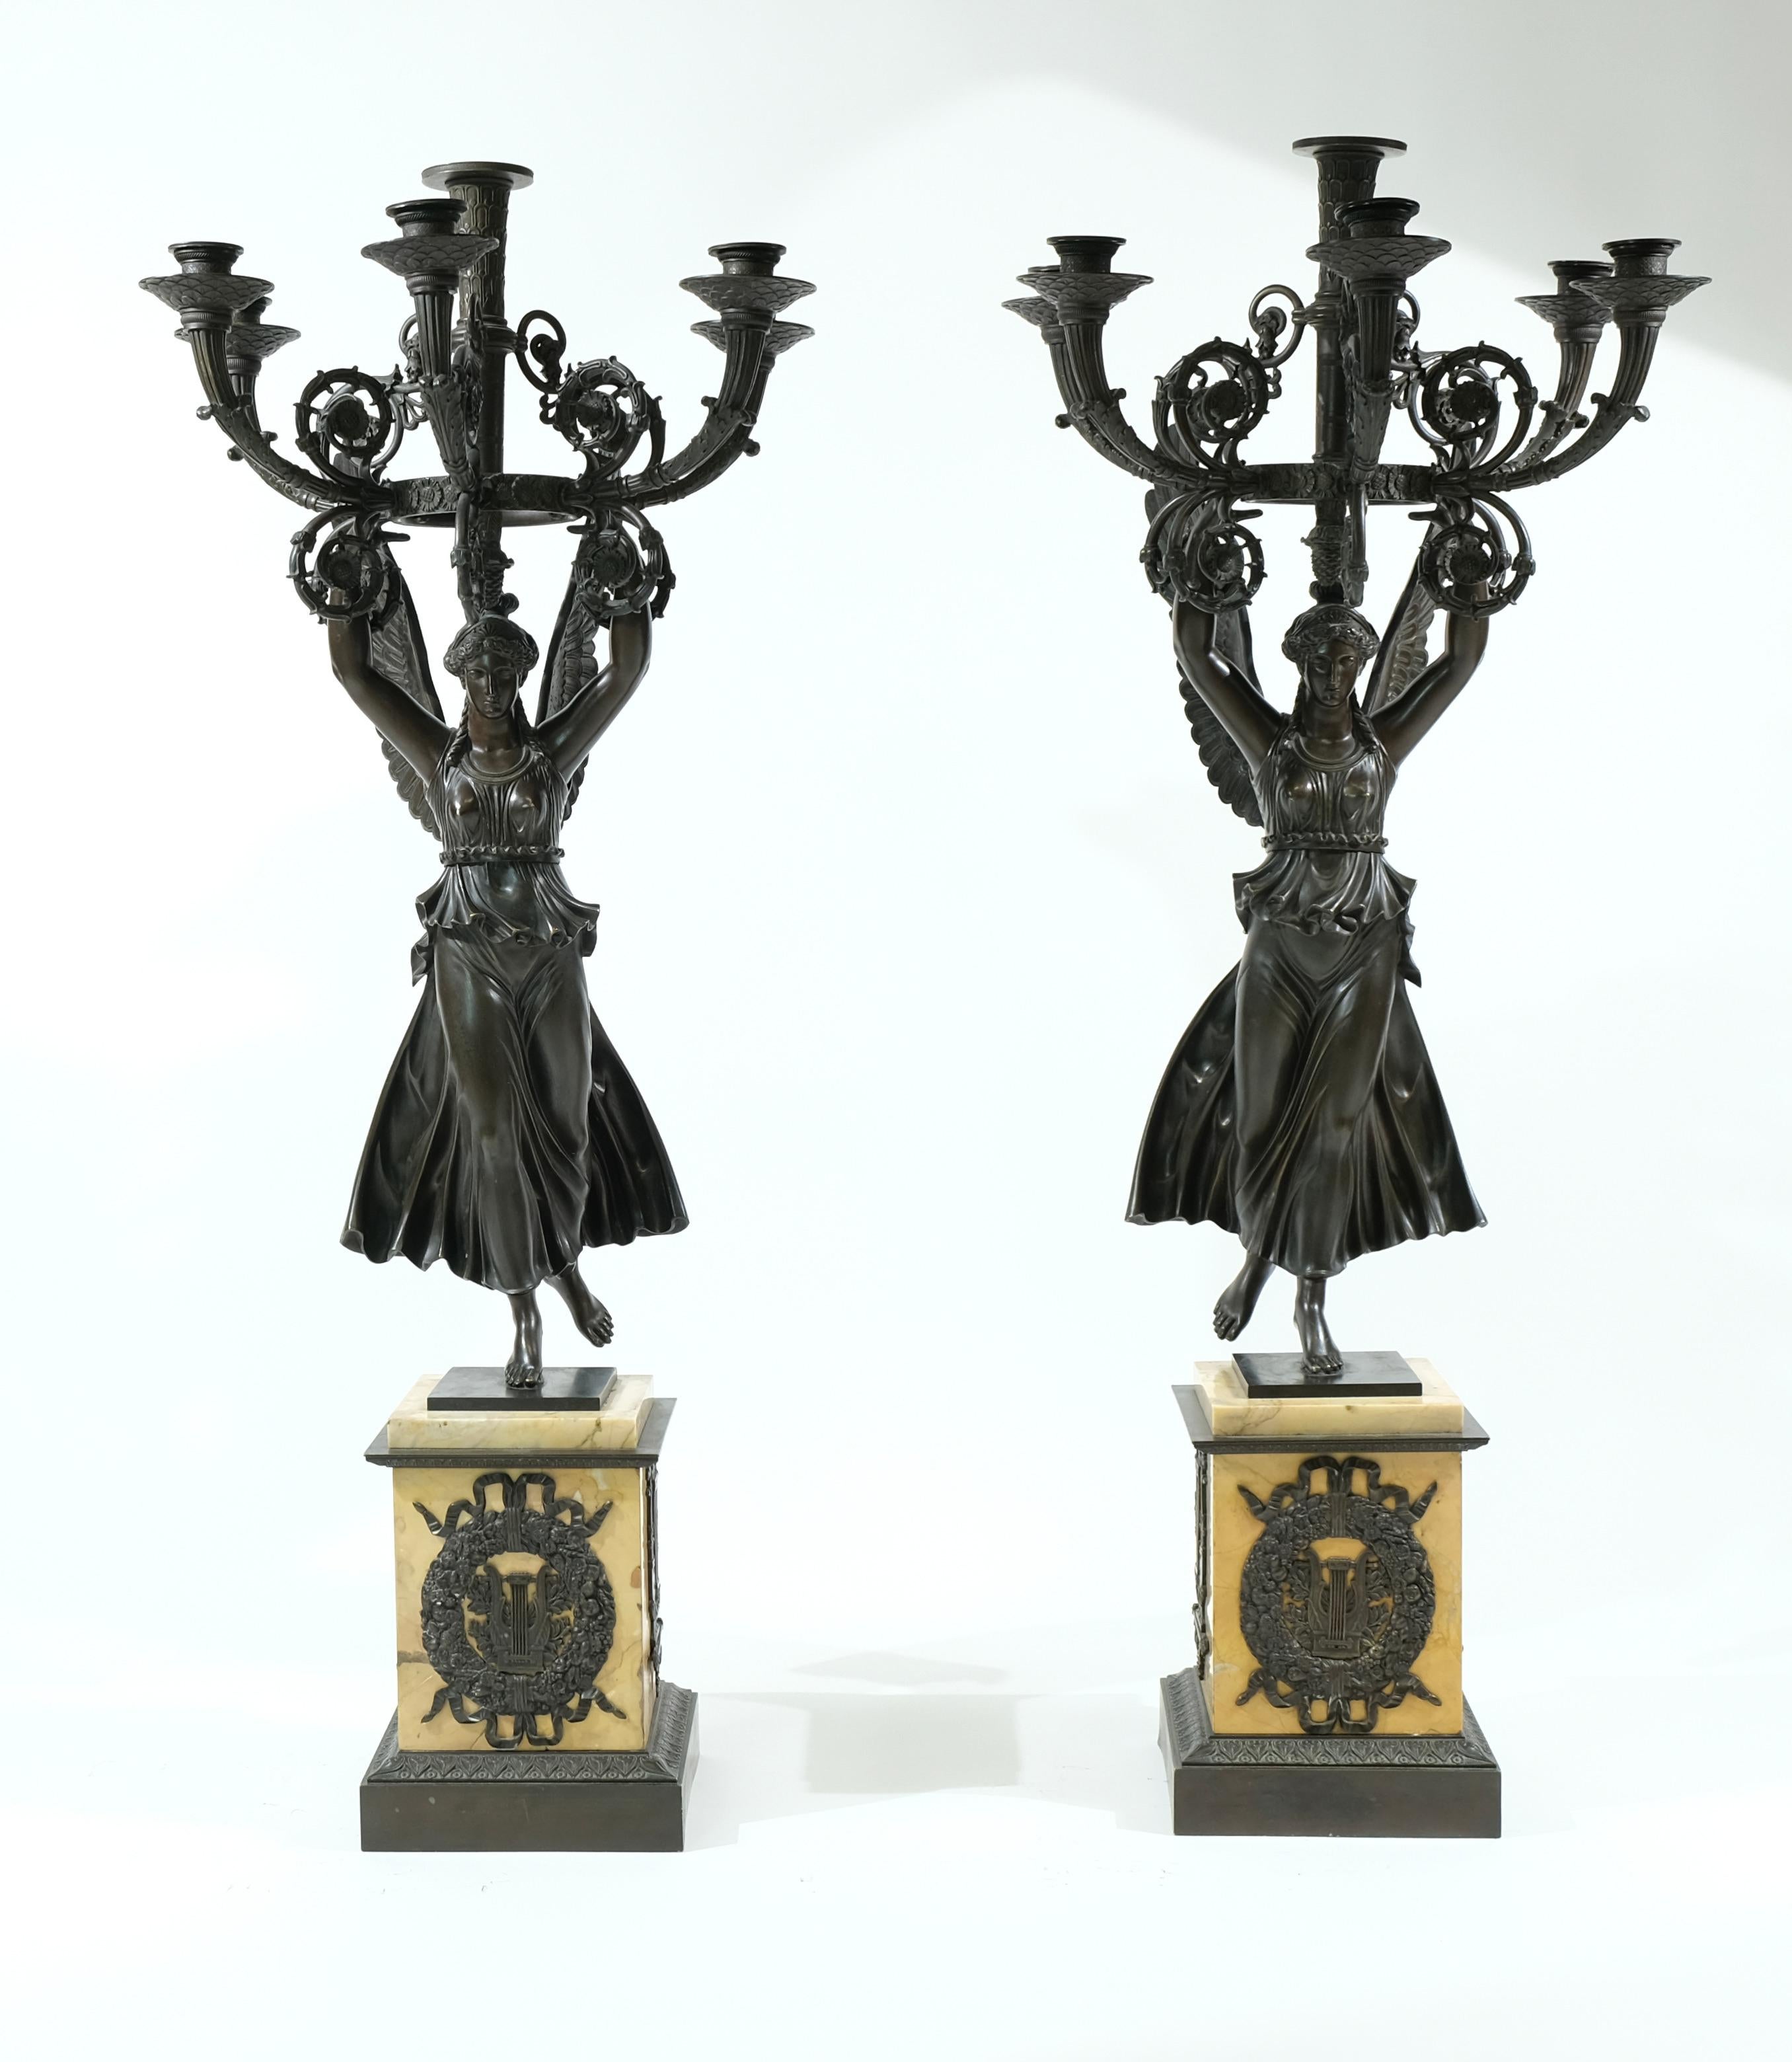 Ein Paar großer Empire-Kandelaber aus der Zeit um 1815. Die Sockel sind aus Siena-Marmor gefertigt und mit Bronze-Ornamenten versehen. Auf den Sockeln stehen die Skulpturen der Frauen des Sieges, die jeweils fünf Zweige mit Kerzenhaltern halten. Die